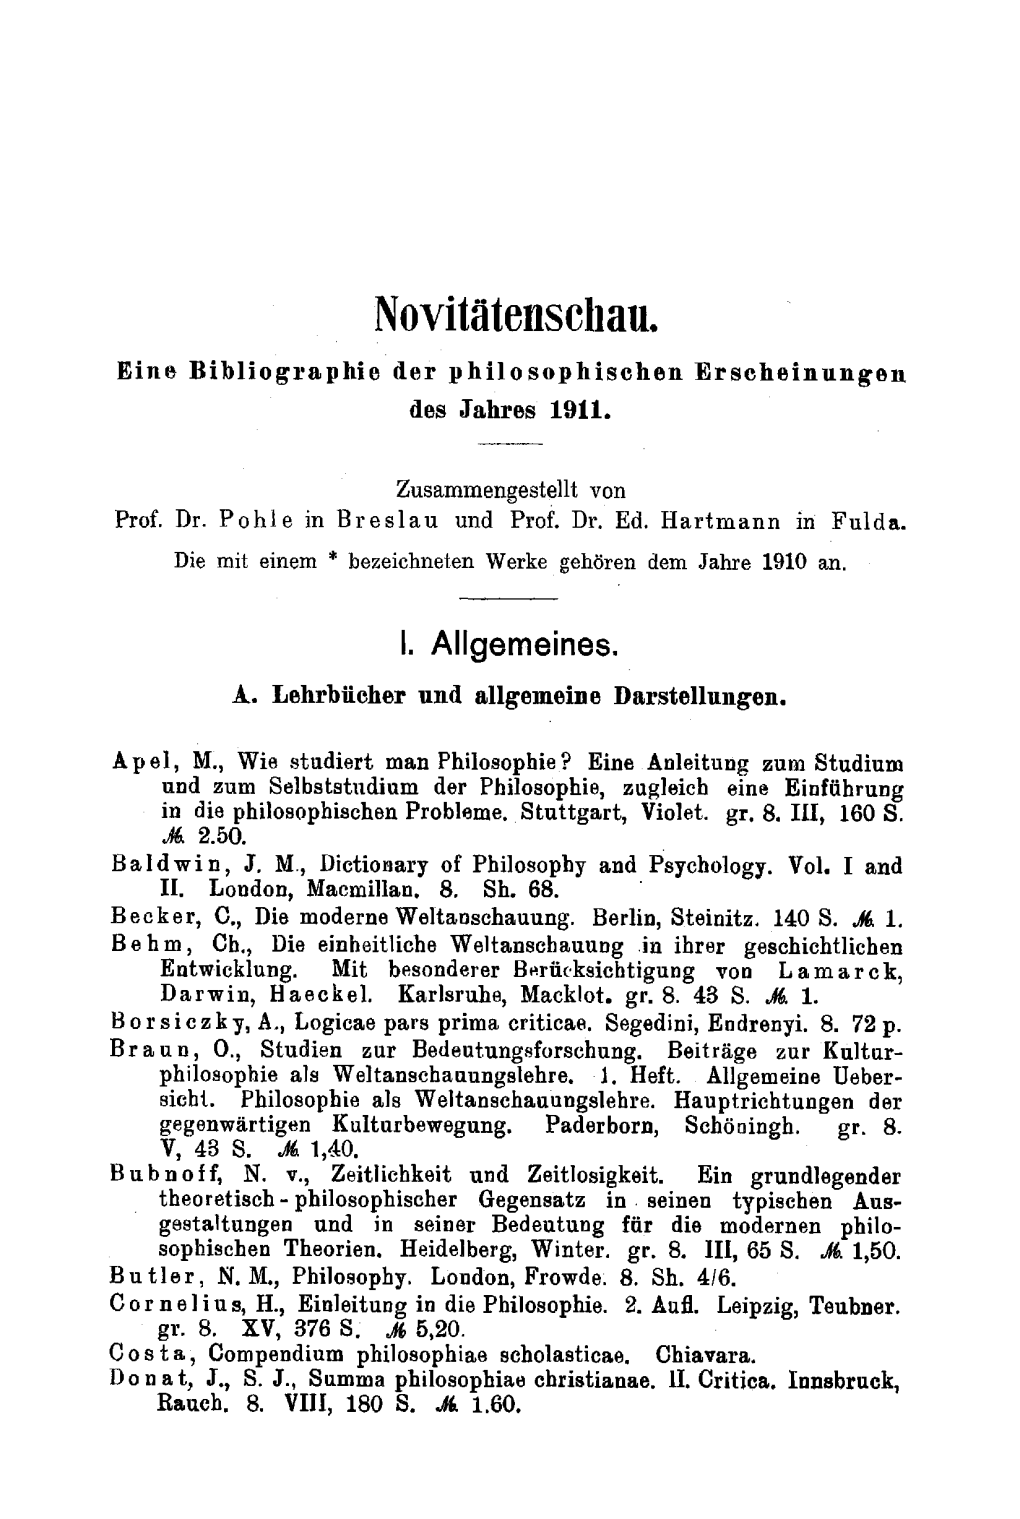 Novitätenscliau. Eine Bibliographie Der Philosophischen Erscheinungen Des Jahres 1911